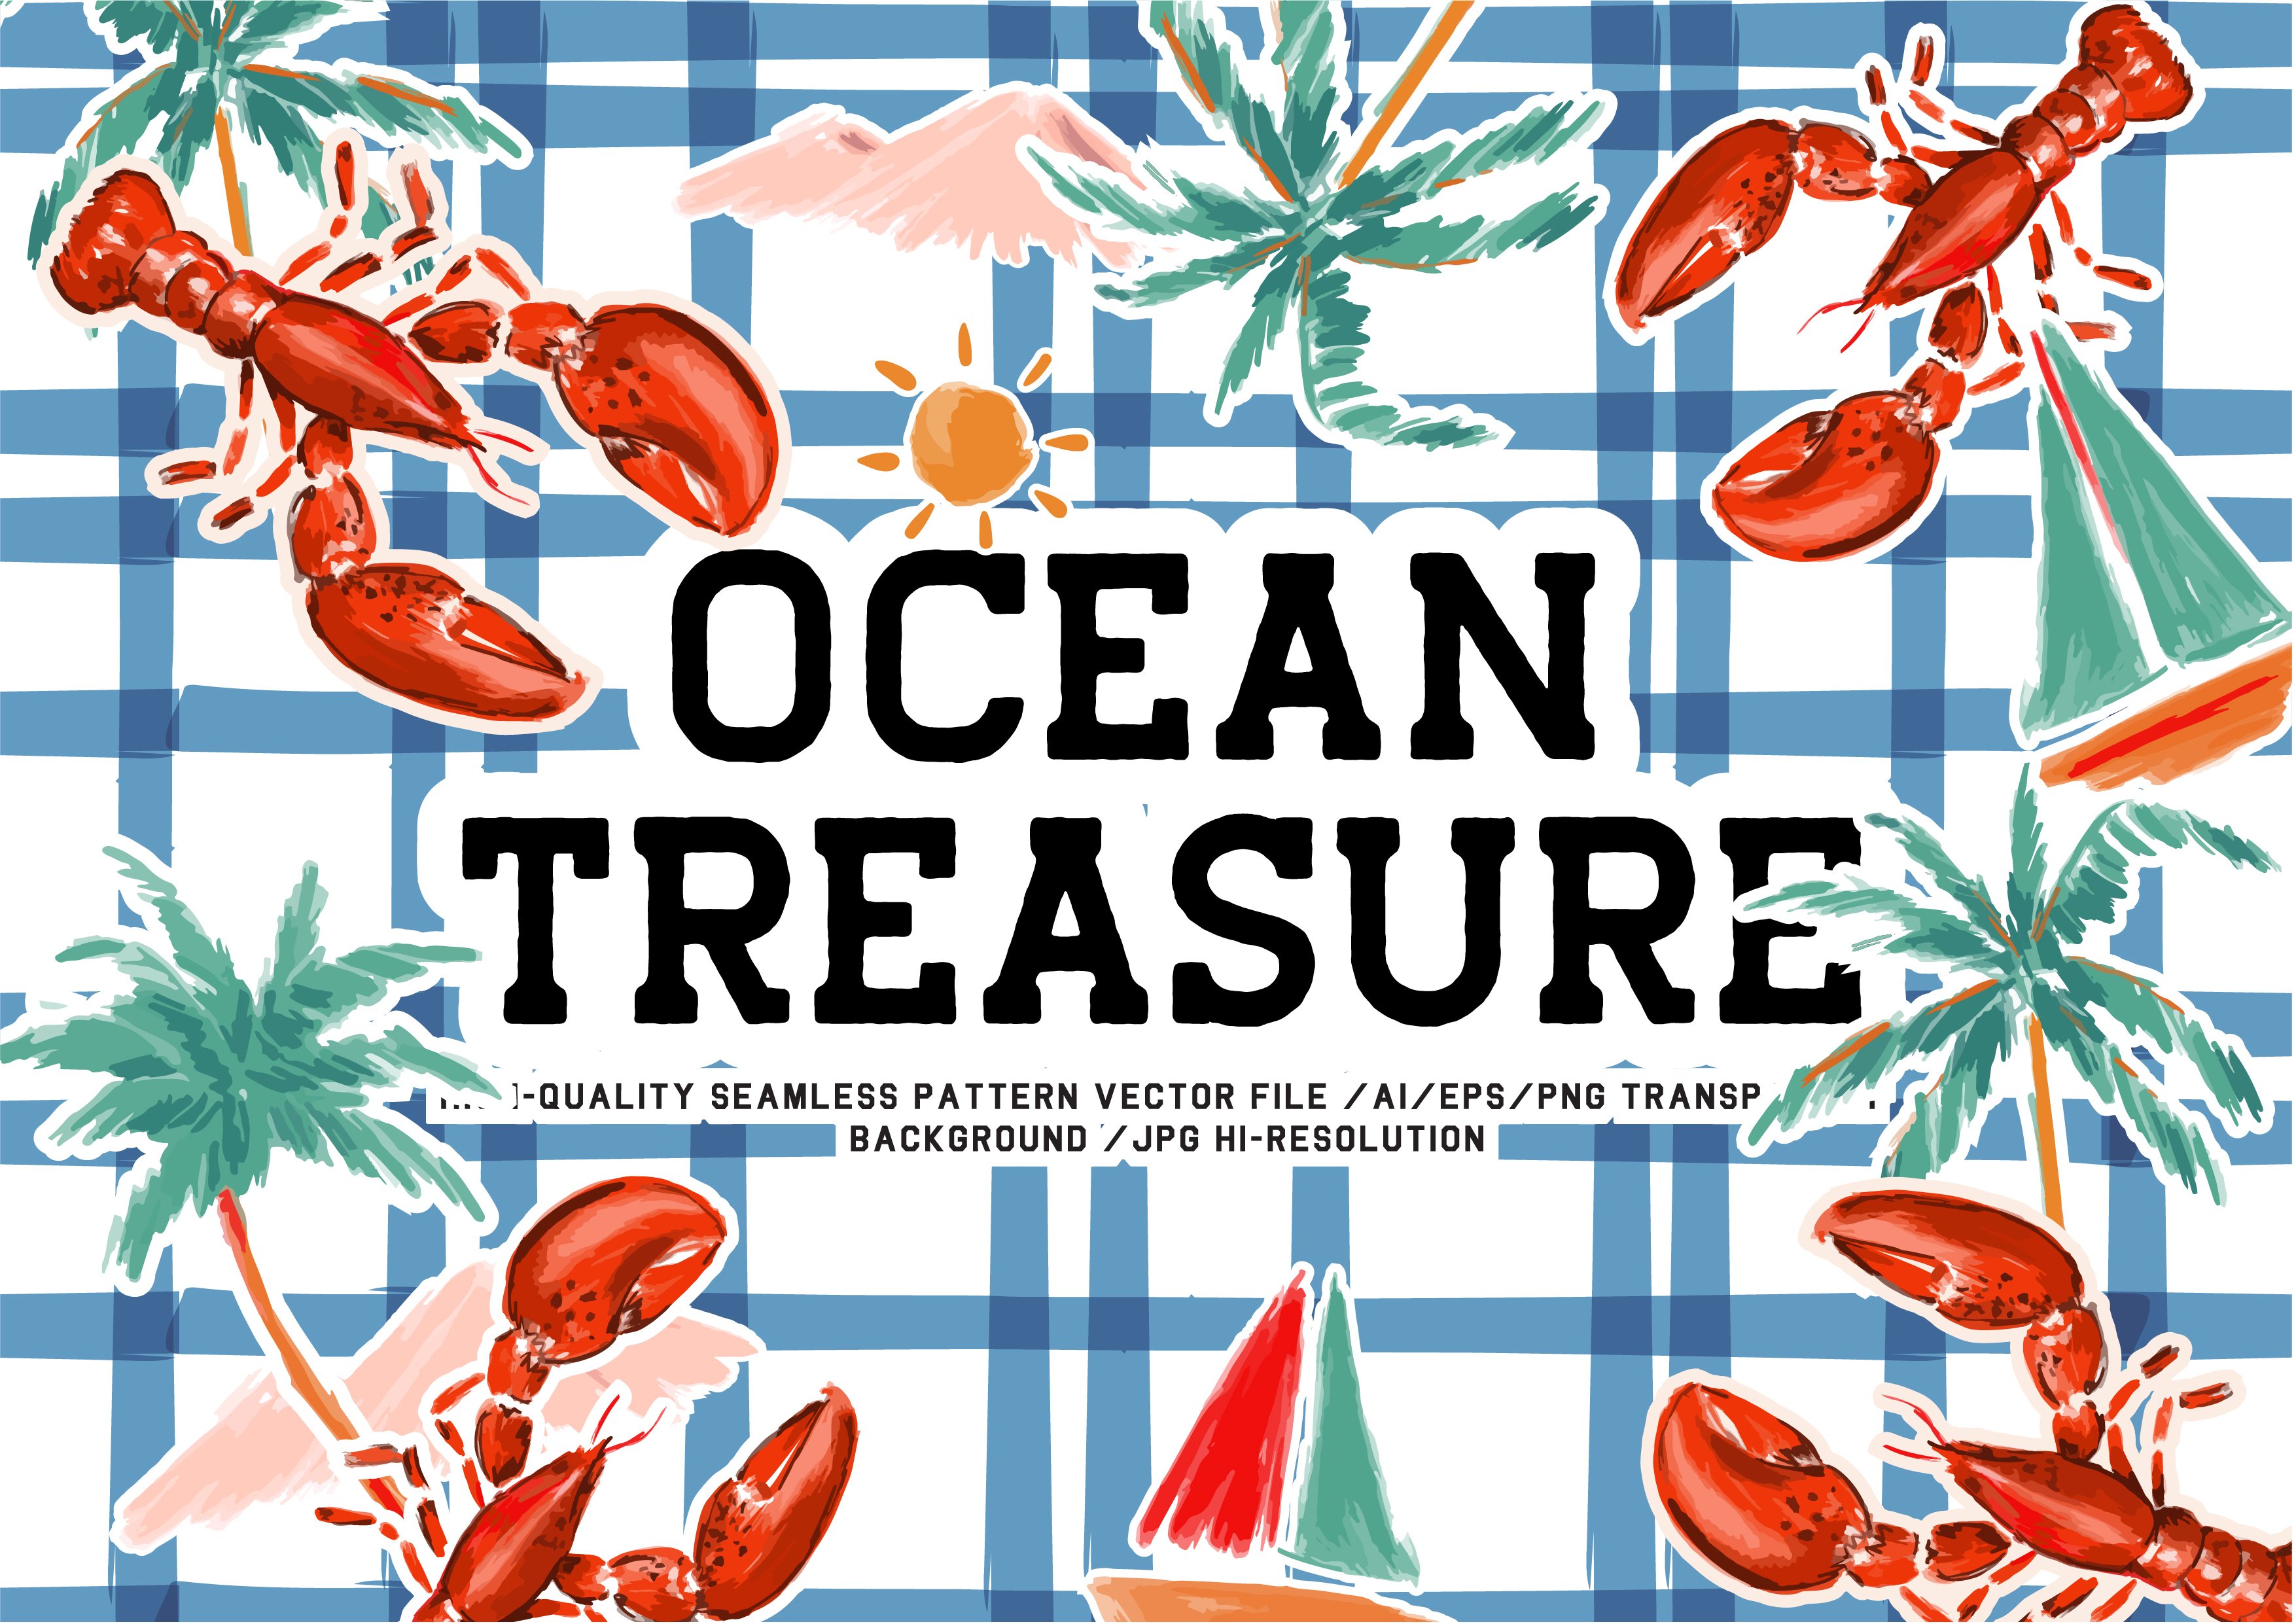 Ocean Treasures cover image.